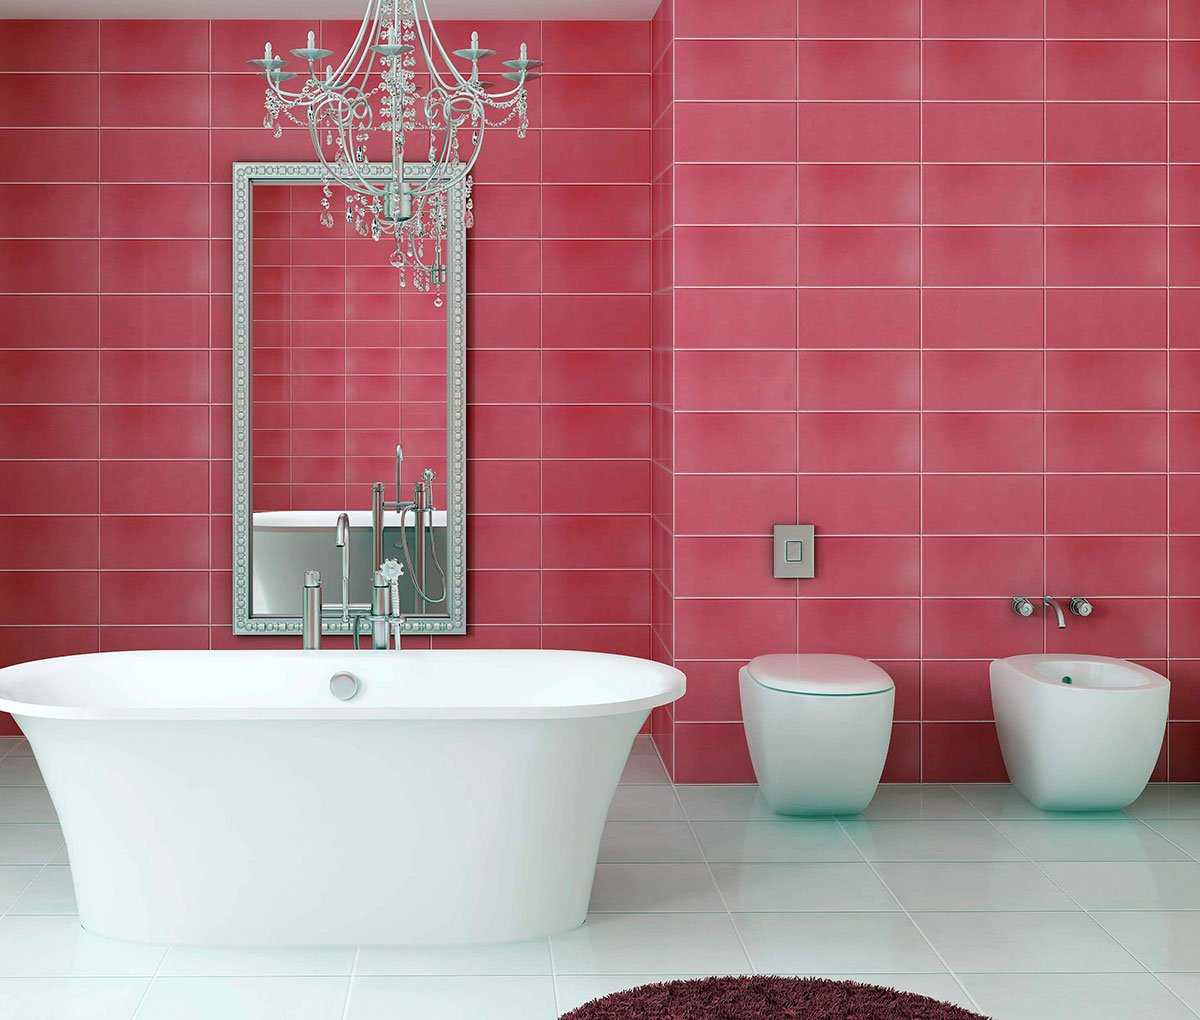 élénk rózsaszín kombinációja a hálószoba kialakításában más színekkel